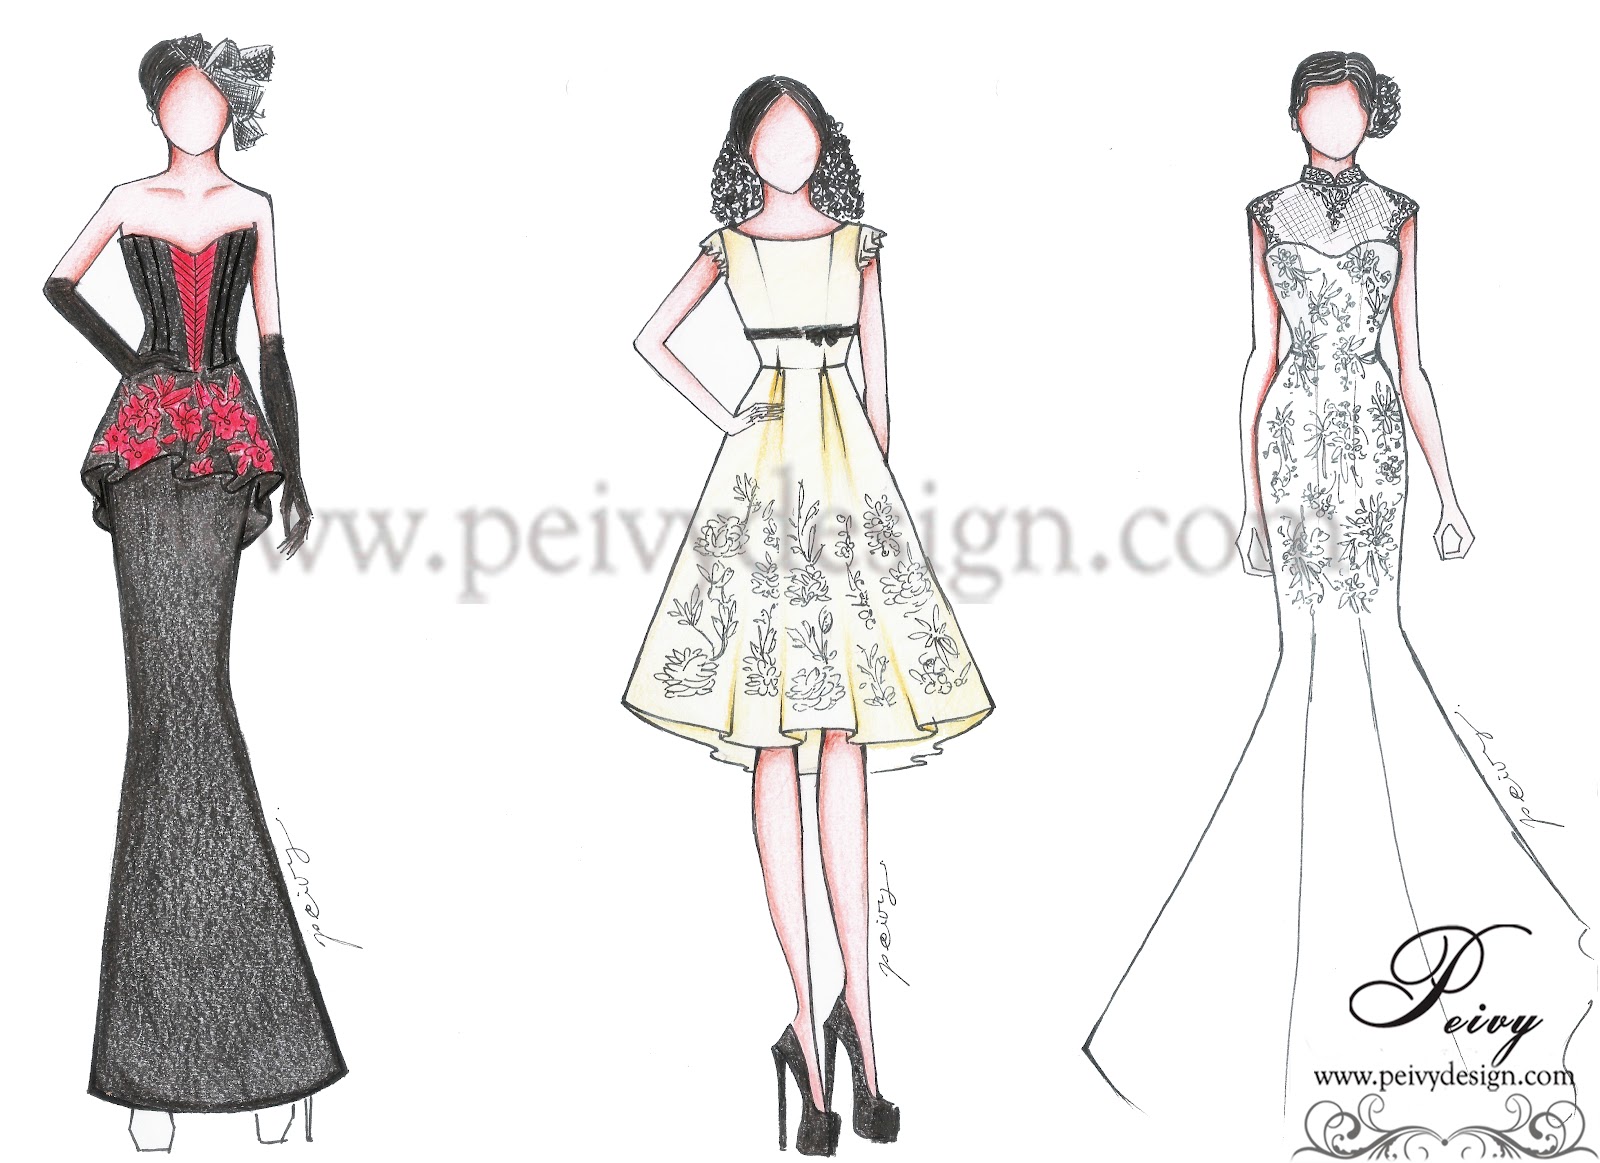 Pre wedding Dress Part 1 by Peivy Design Peivy Design